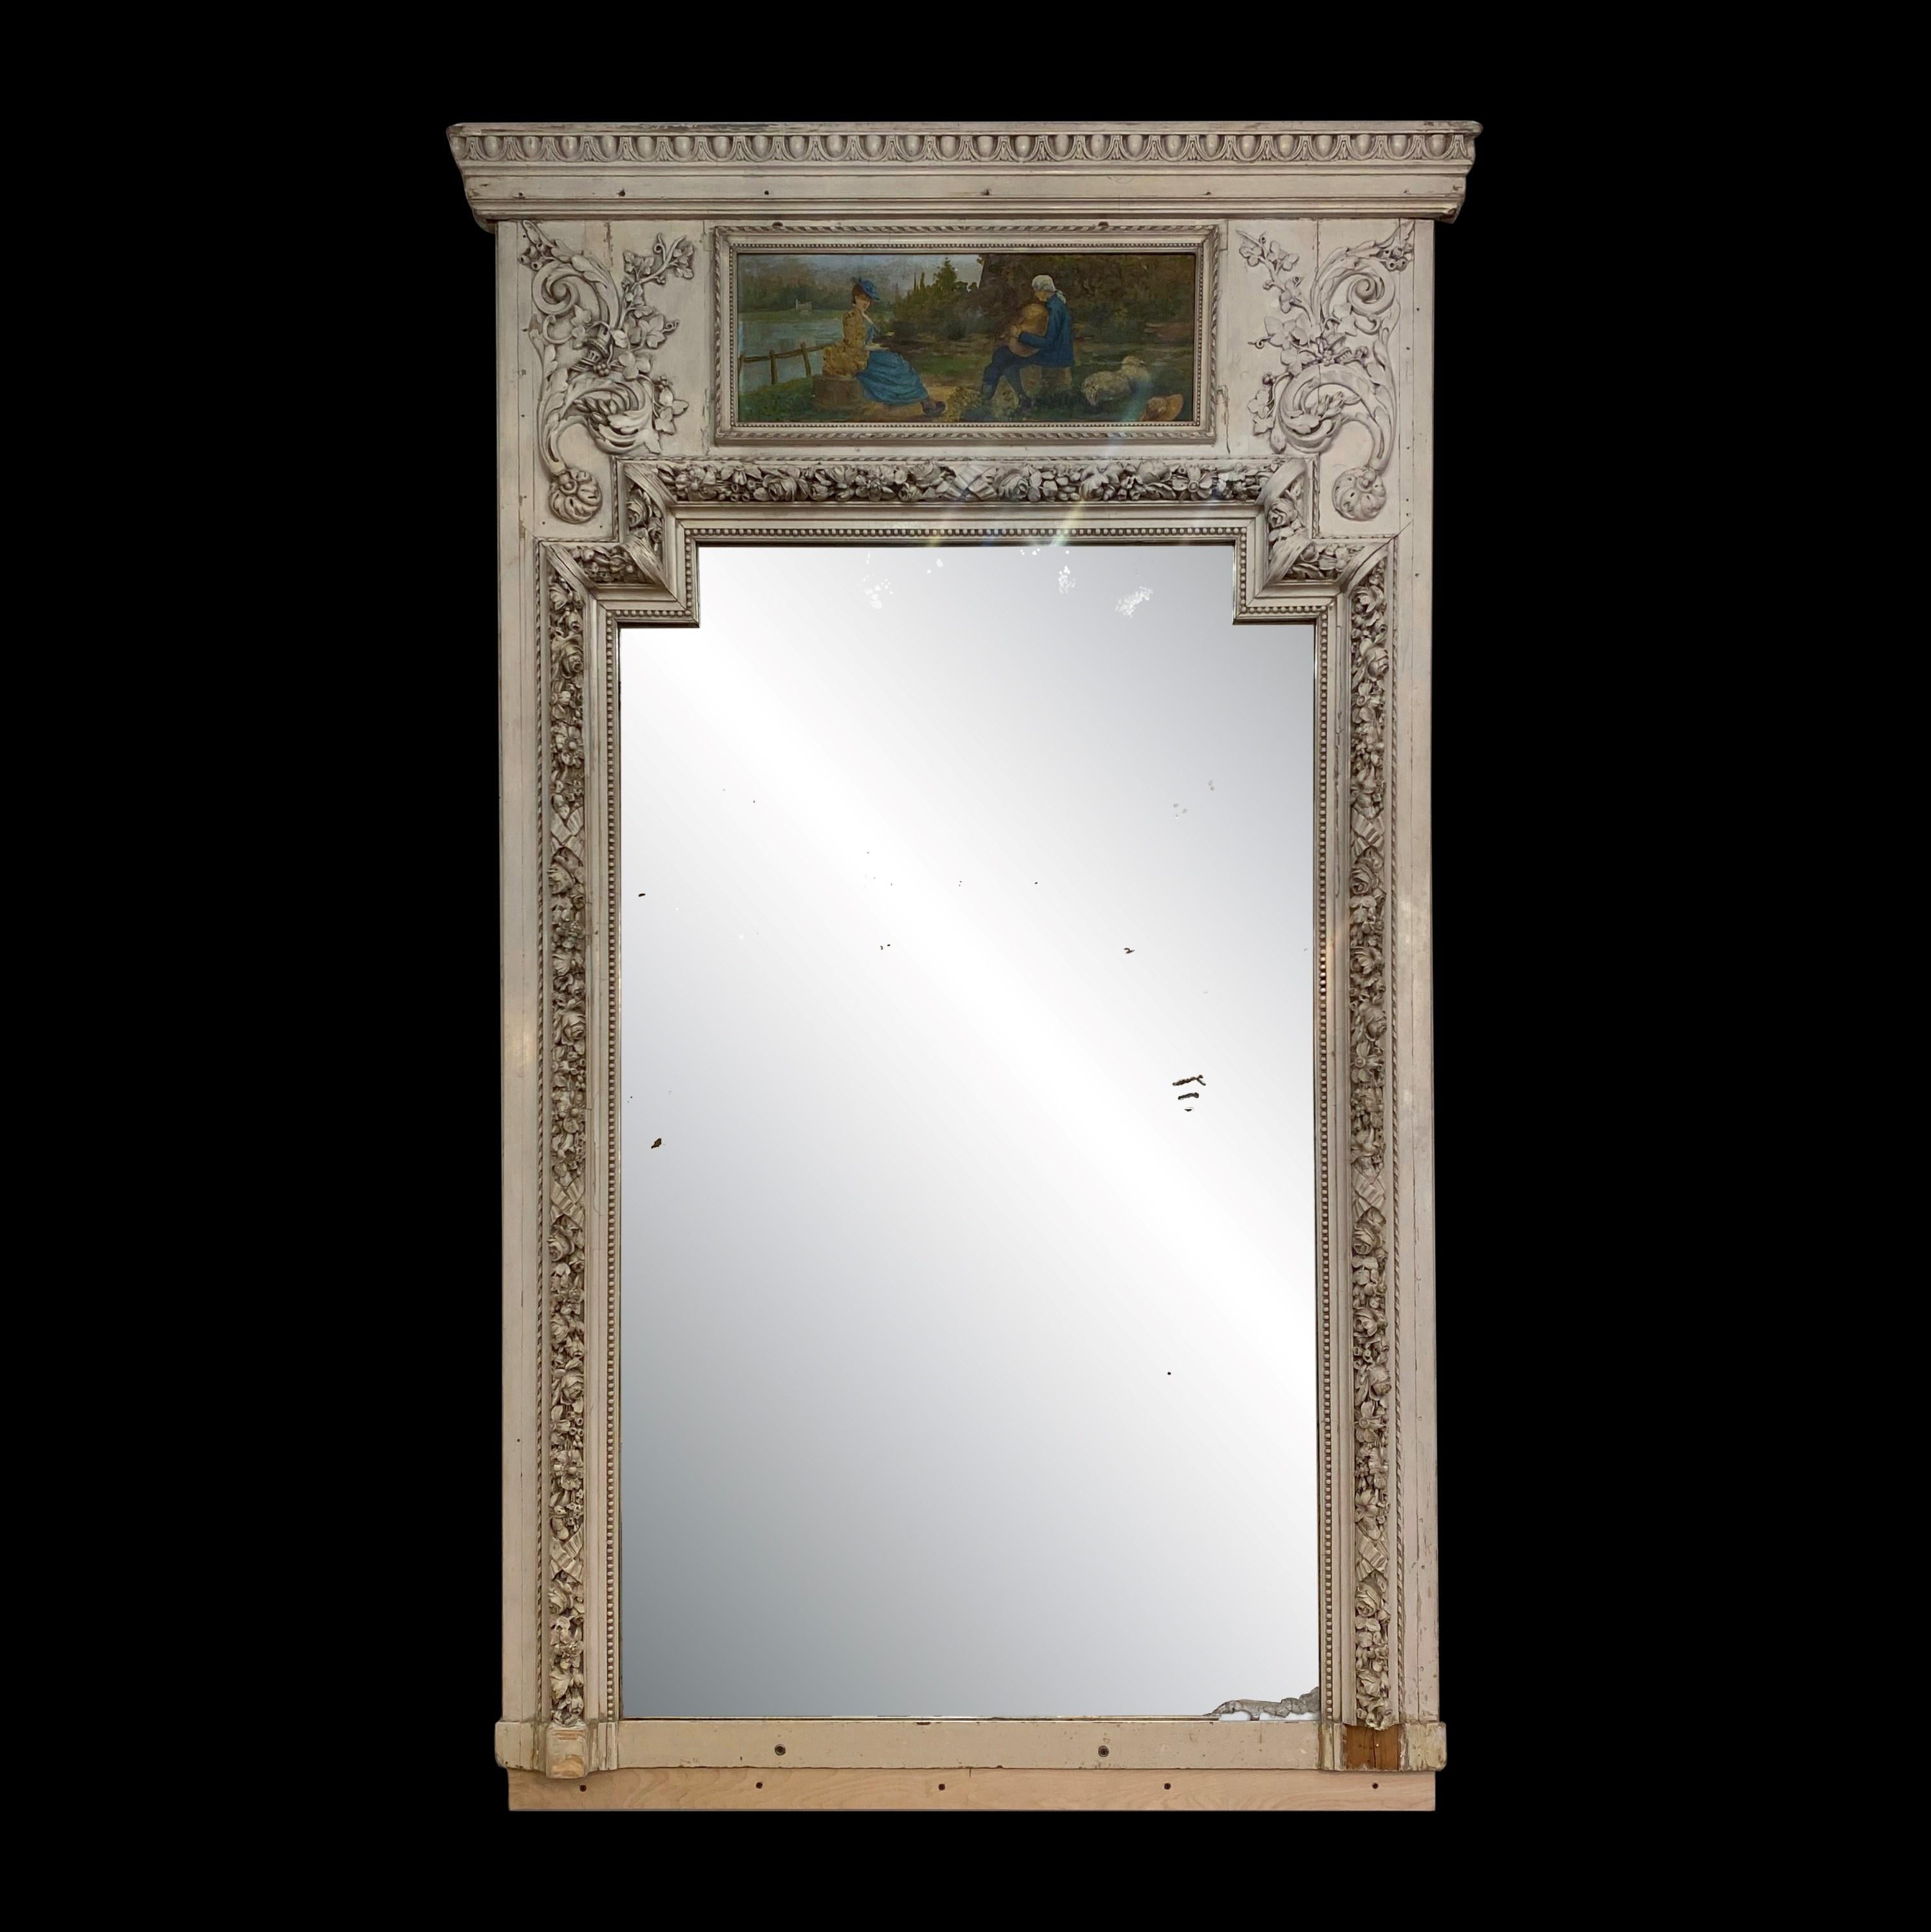 Dies ist ein exquisiter antiker französischer Trumeau-Spiegel, der mit einem wunderschön verzierten, weiß gestrichenen Holzrahmen und einem exquisiten kleinen Gemälde auf der Oberseite geschmückt ist. Das Glas trägt das stolze Herstellungsdatum 30.